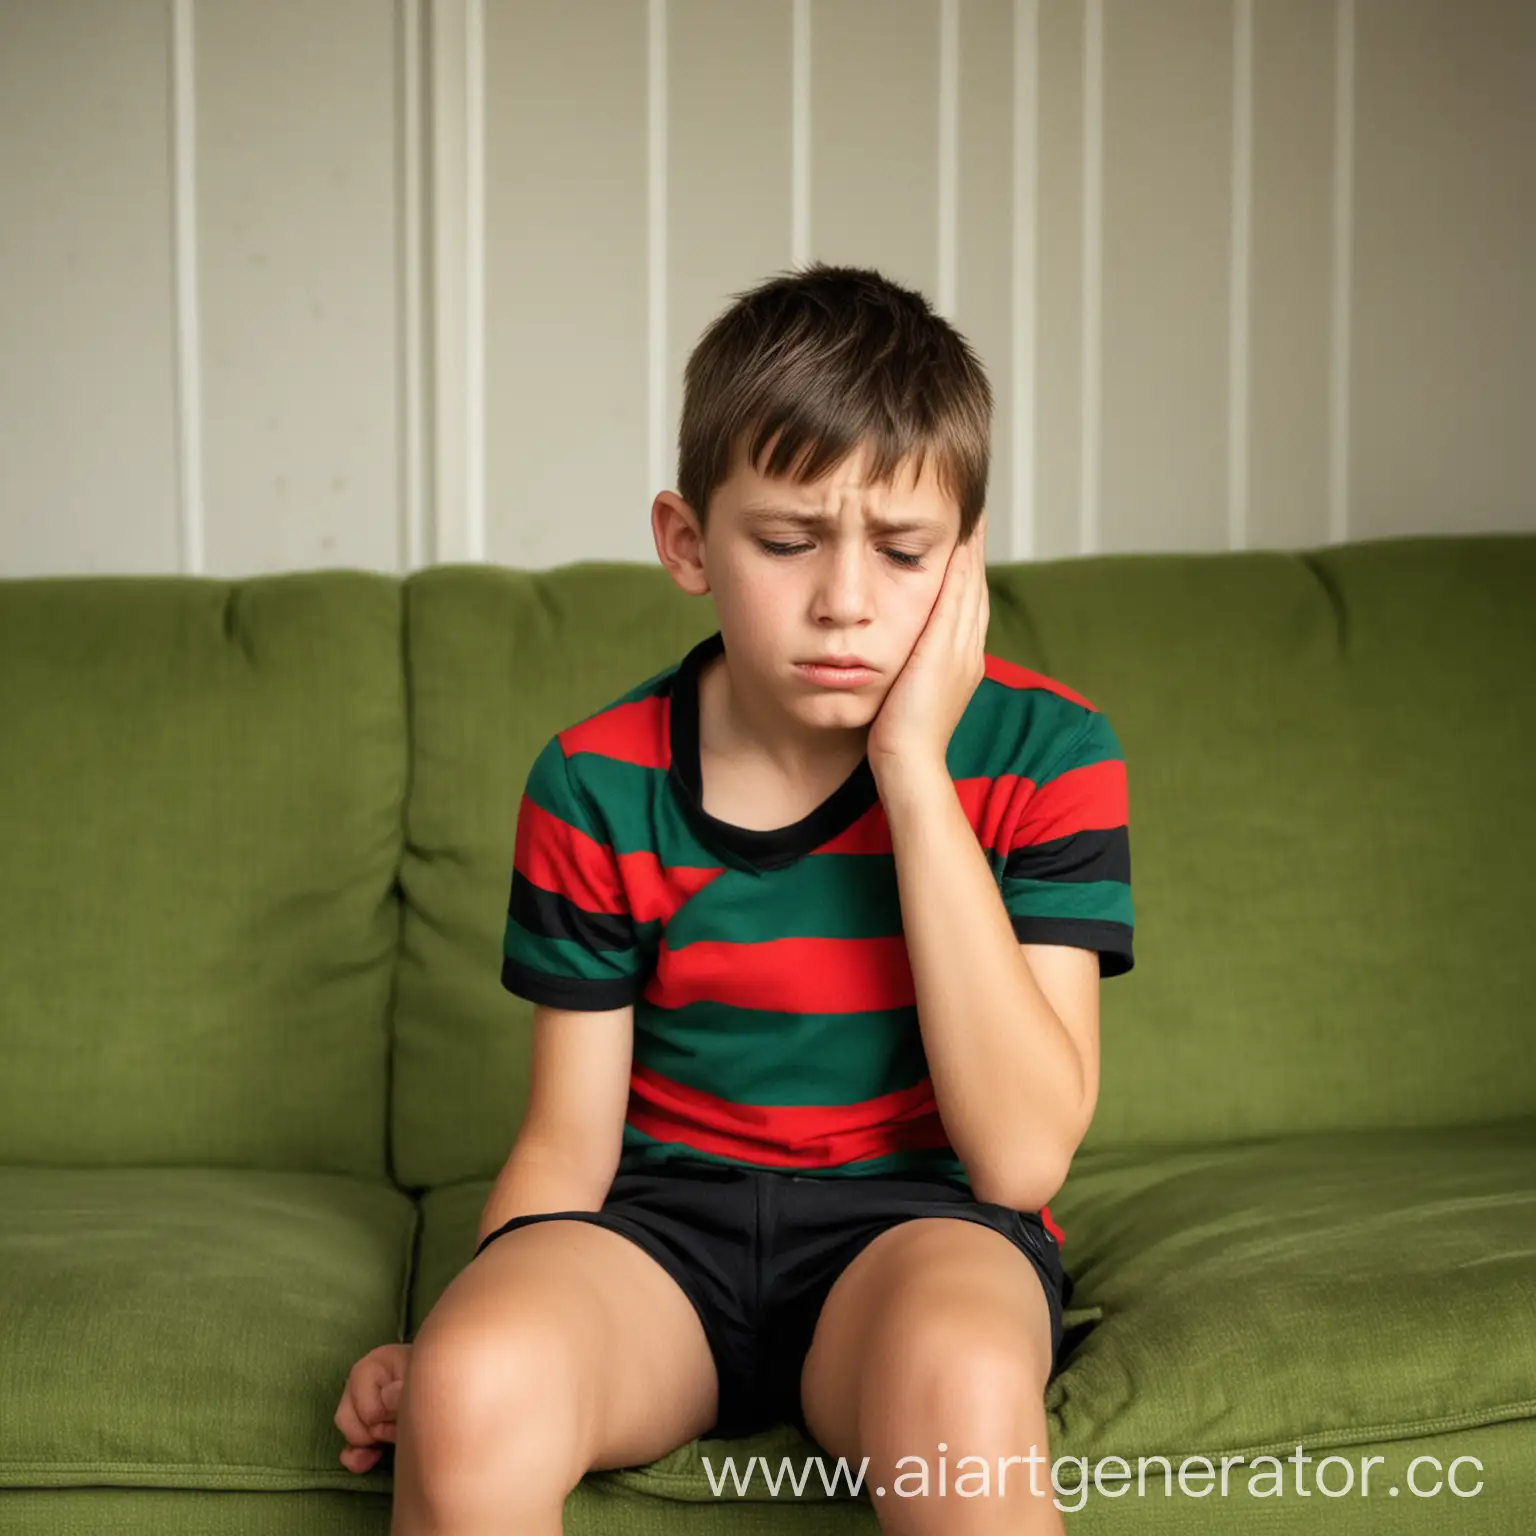 Реальная фотография. Мальчик сидит в комнате  на зелёном диване в комнате и держится за щёку. У него болит зуб. Мальчику 10 лет, он грустный.  На нём красно-чёрная полосатая футболка и белые шорты